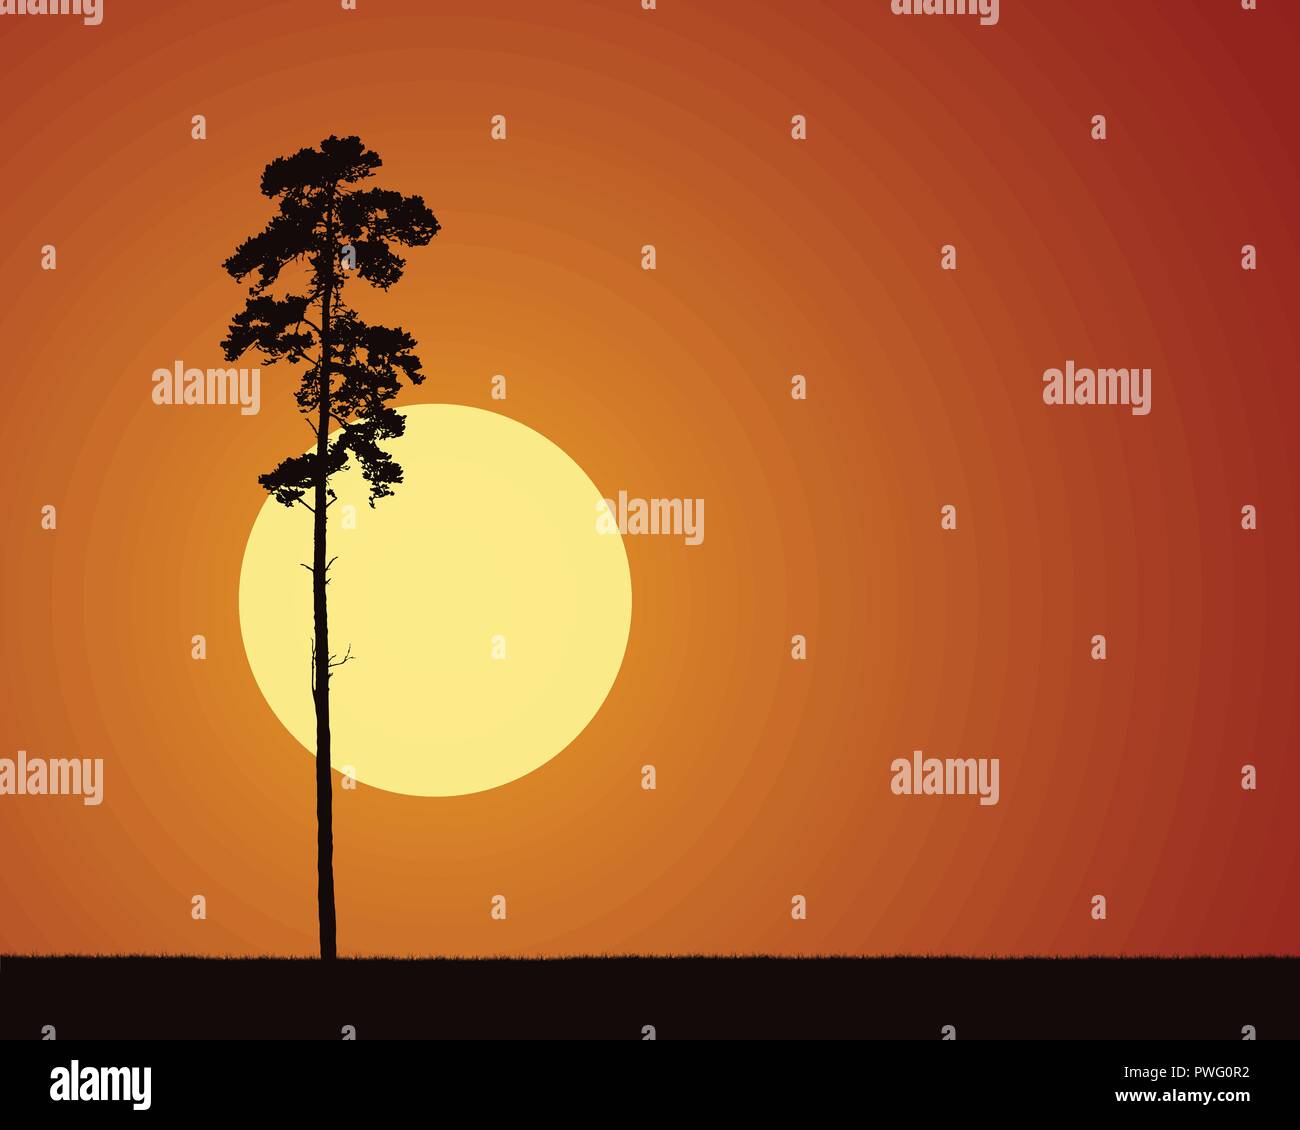 Illustrazioni realistiche con stagliano conifera albero ed erba, con l'aumento o impostazione di sole al mattino o alla sera cielo arancione - vettore Illustrazione Vettoriale